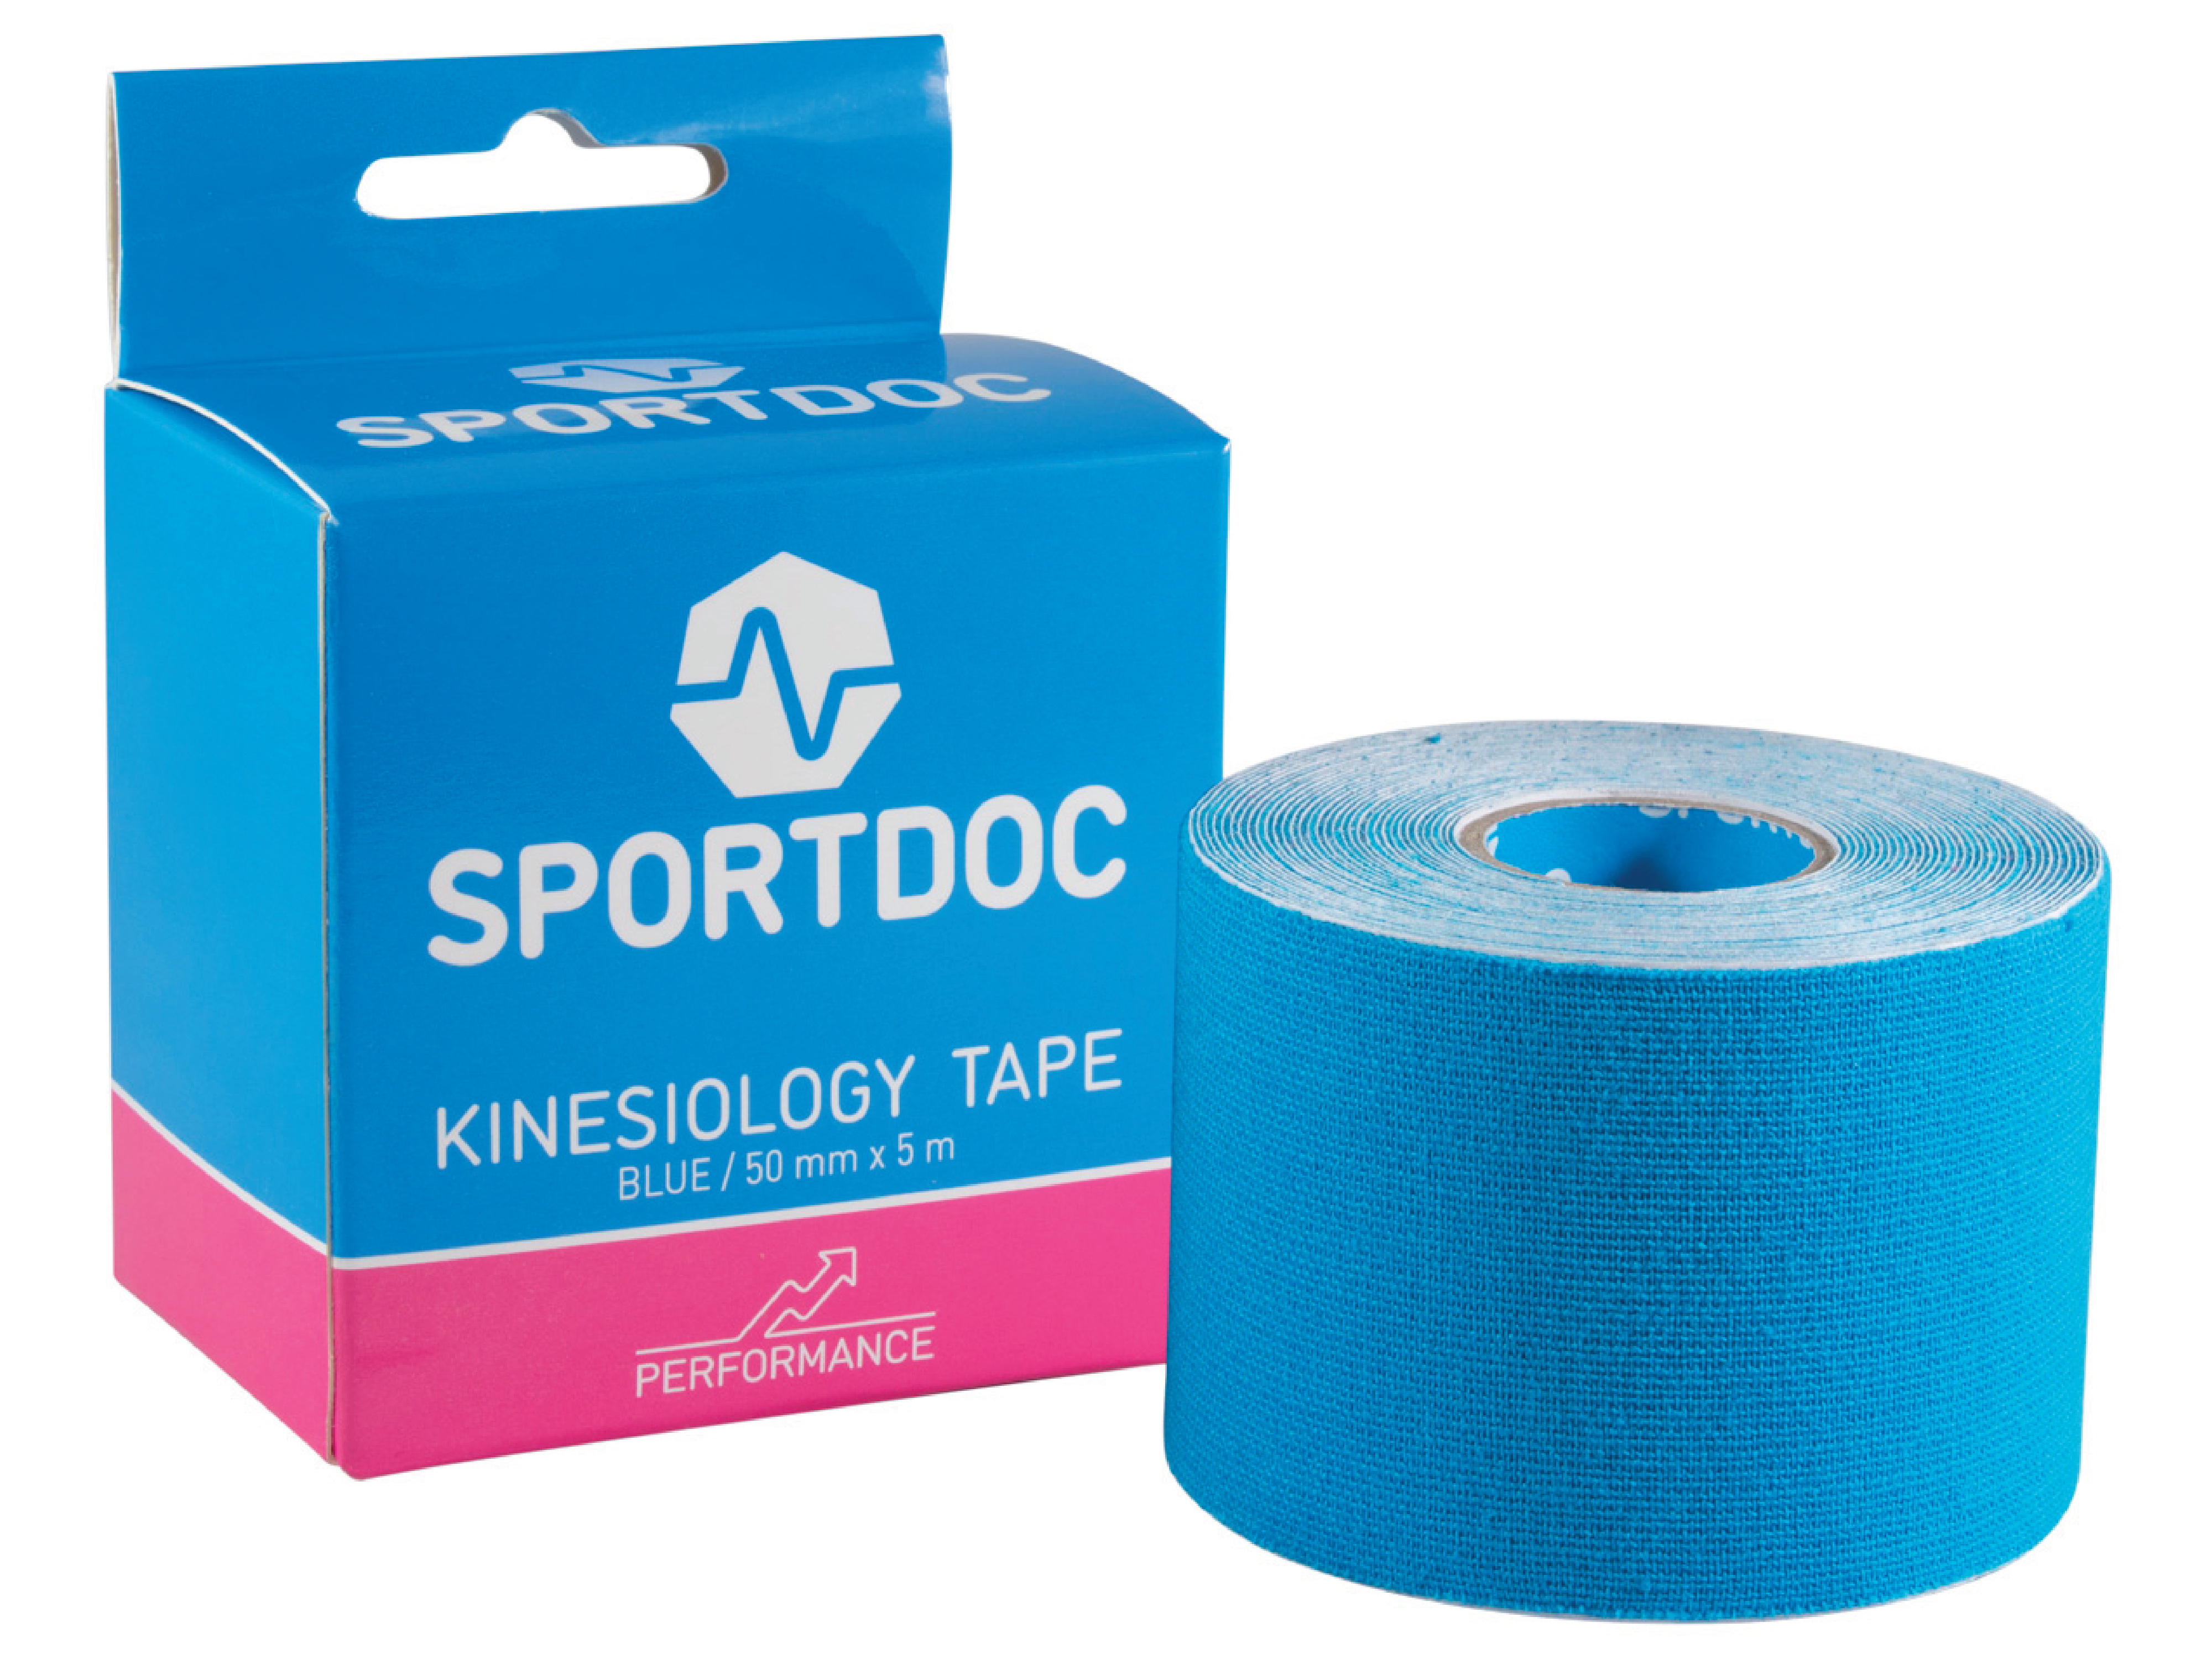 Sportdoc Kinesiology Tape, Blå, 50 mm x 5 m, 1 stk.